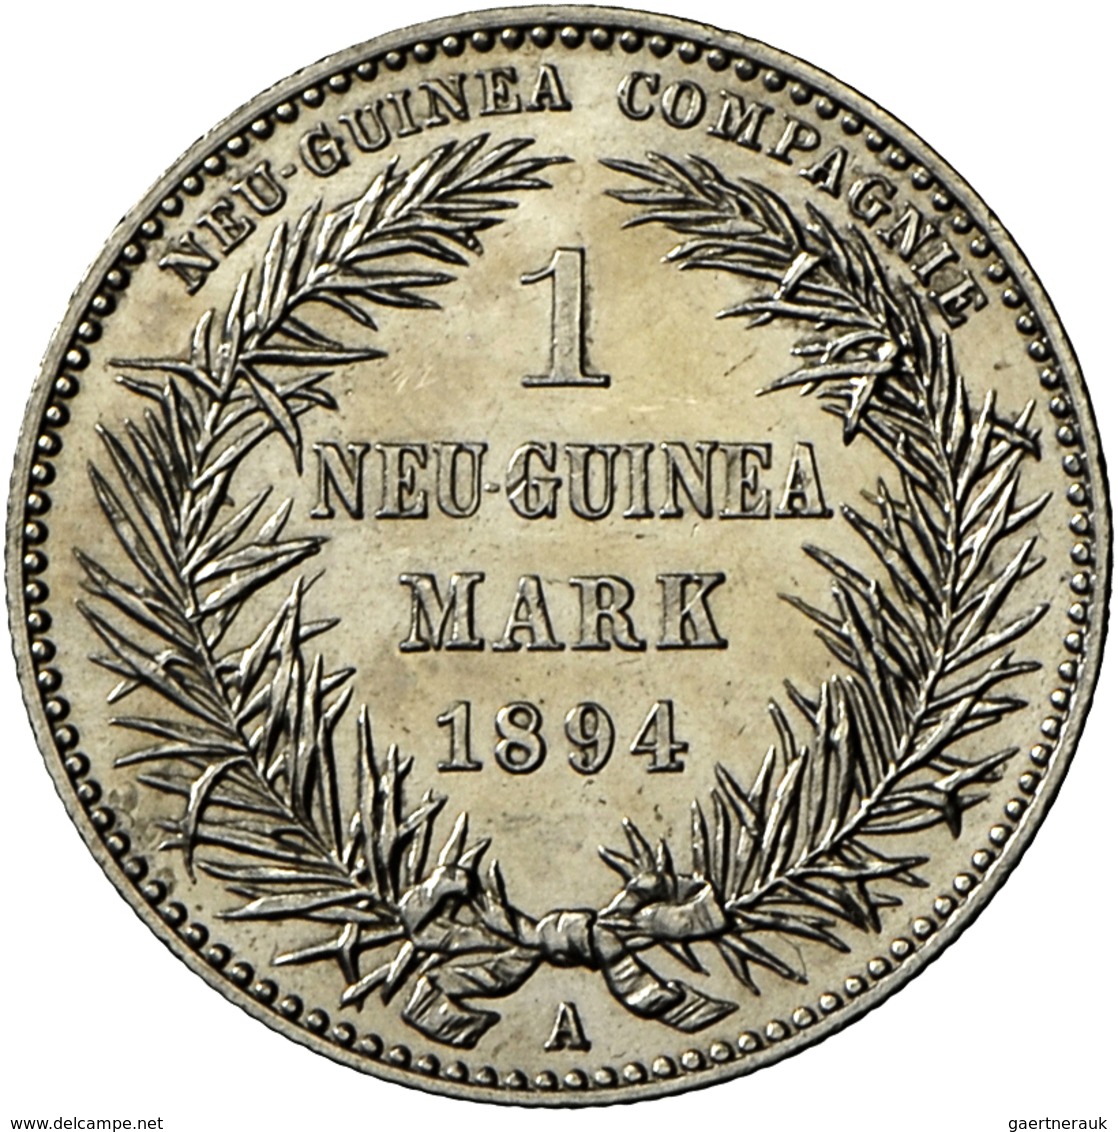 Deutsch-Neuguinea: 1 Mark 1894 A, Paradiesvogel, Jaeger 705, AKS 2018, No. 959, Vorzüglich/Stempelgl - Nuova Guinea Tedesca